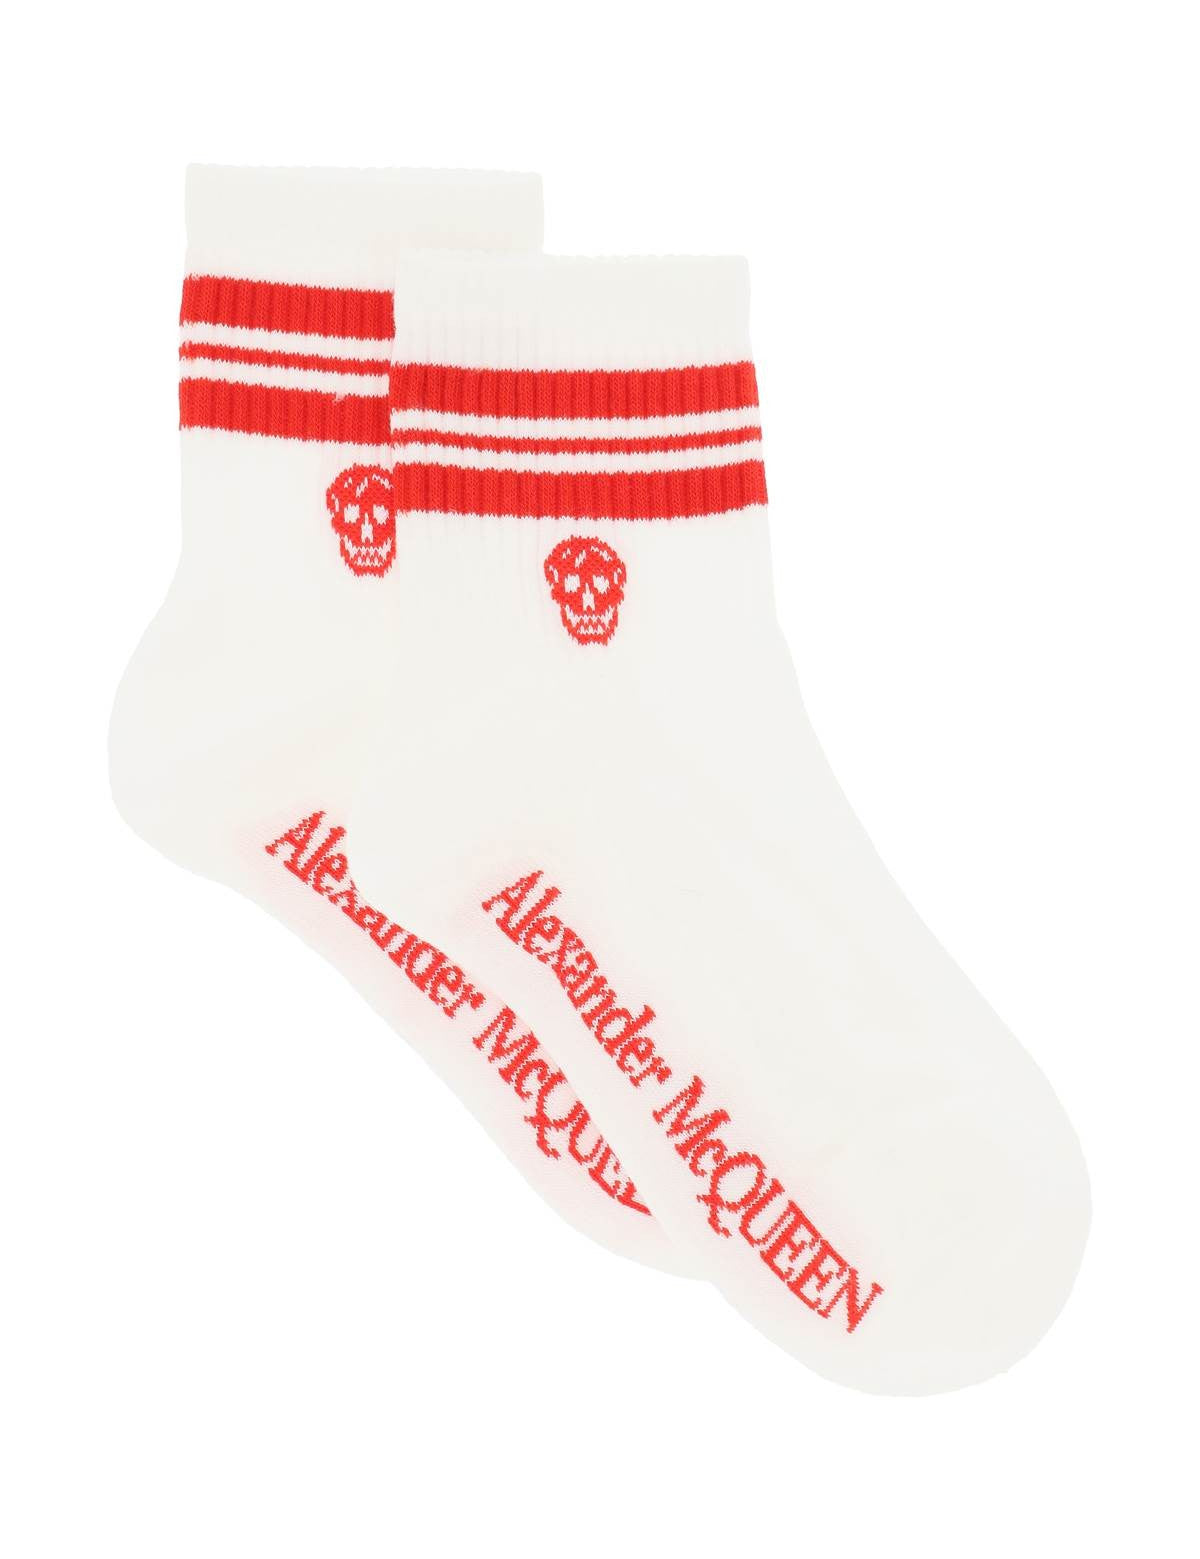 alexander-mcqueen-stripe-skull-sports-socks_09145b1d-16ec-4b75-ad6f-97b1179323b4.jpg